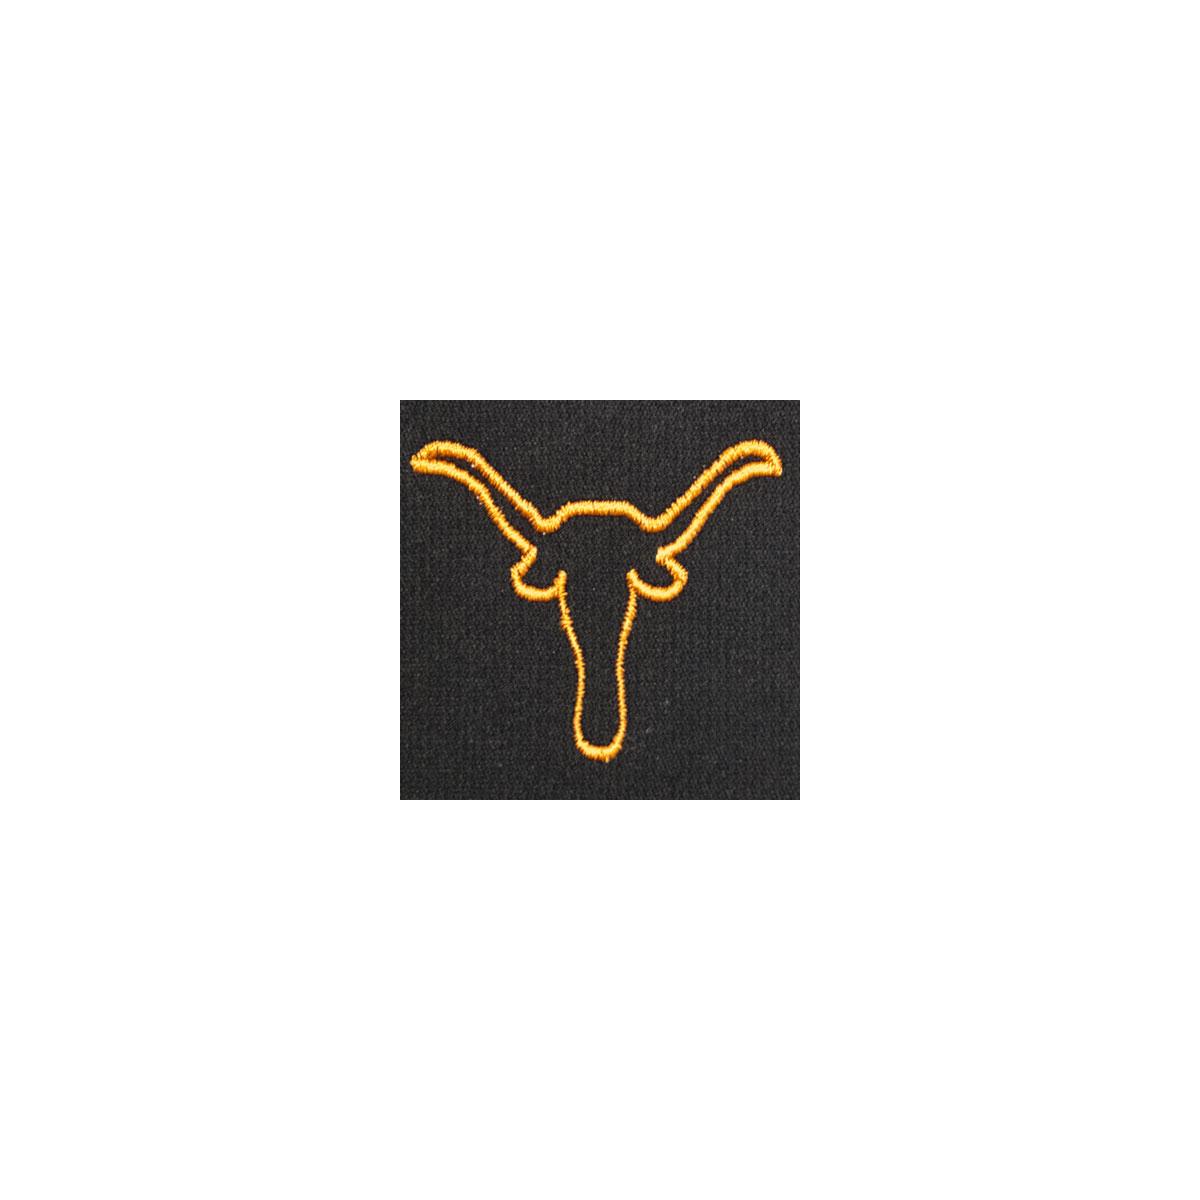 Longhorn Monogram Mascot (MM104)